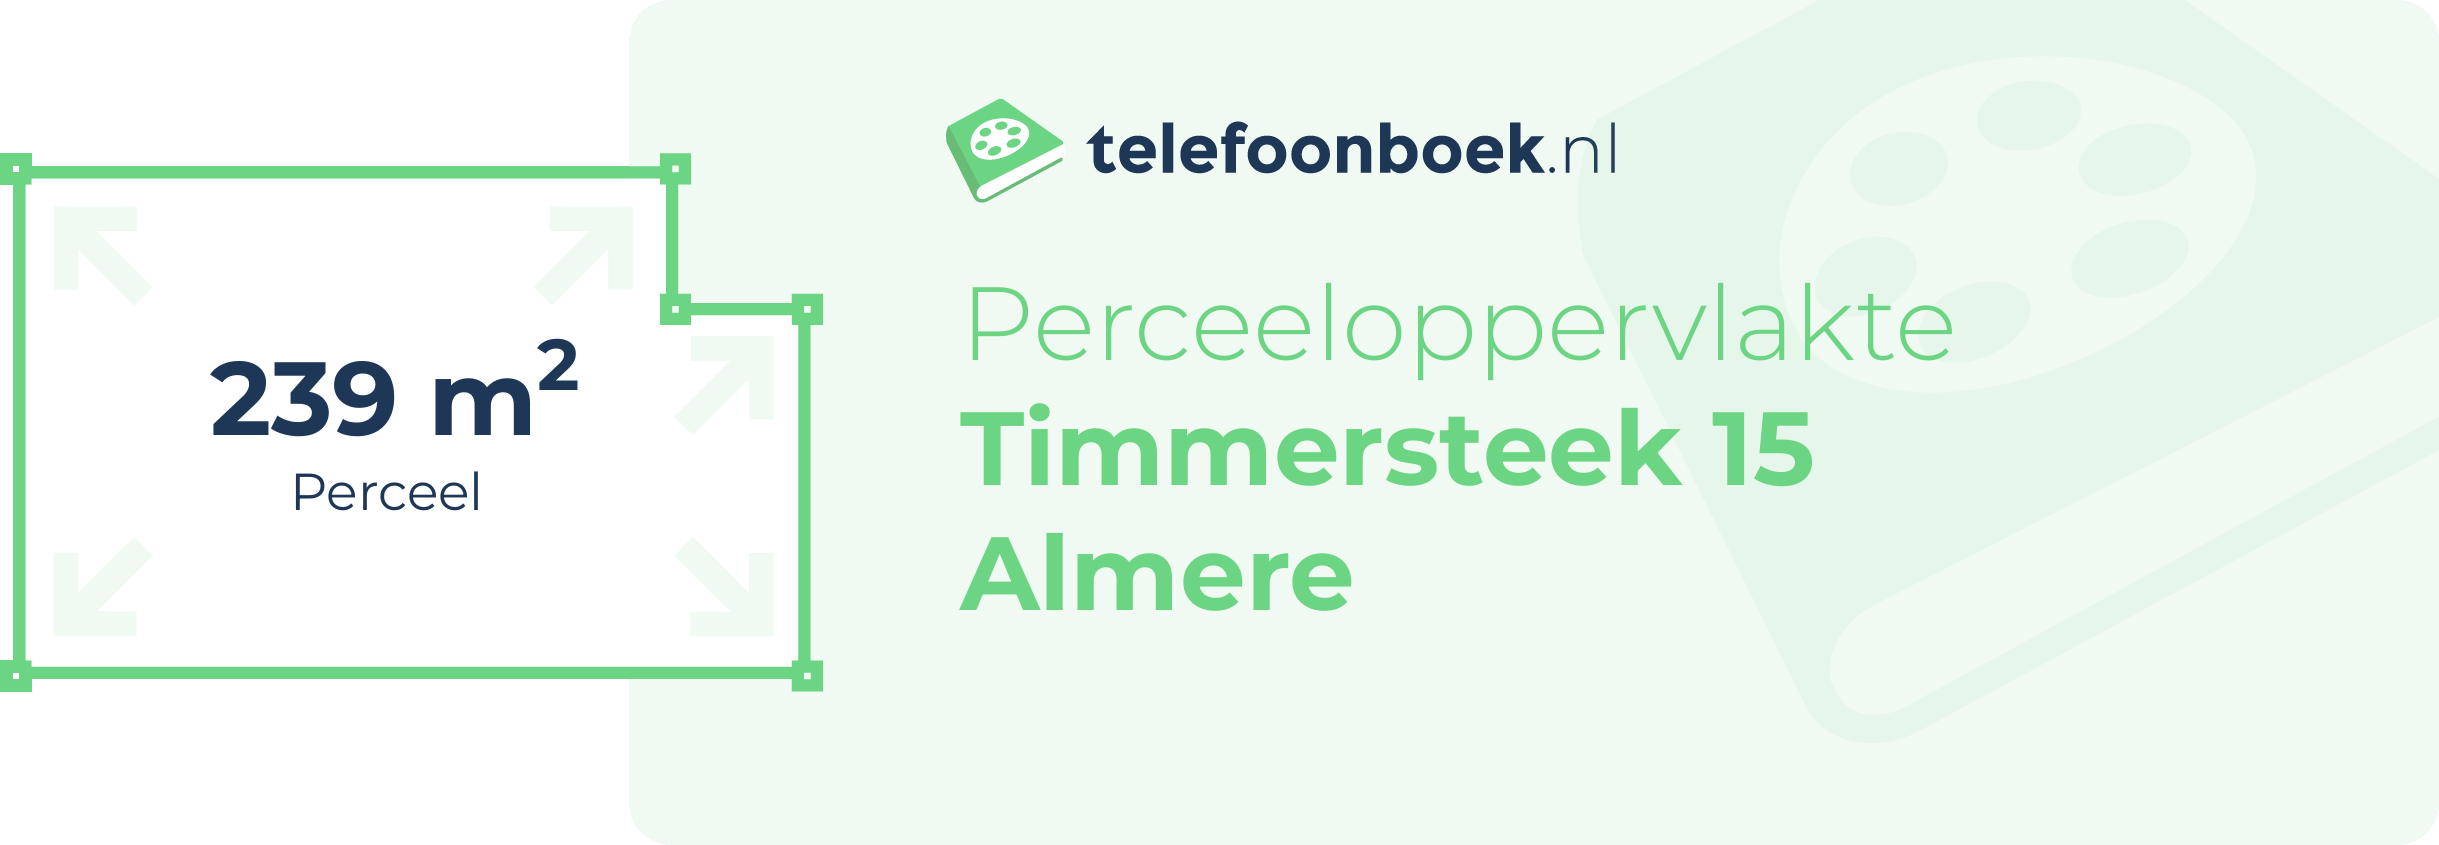 Perceeloppervlakte Timmersteek 15 Almere